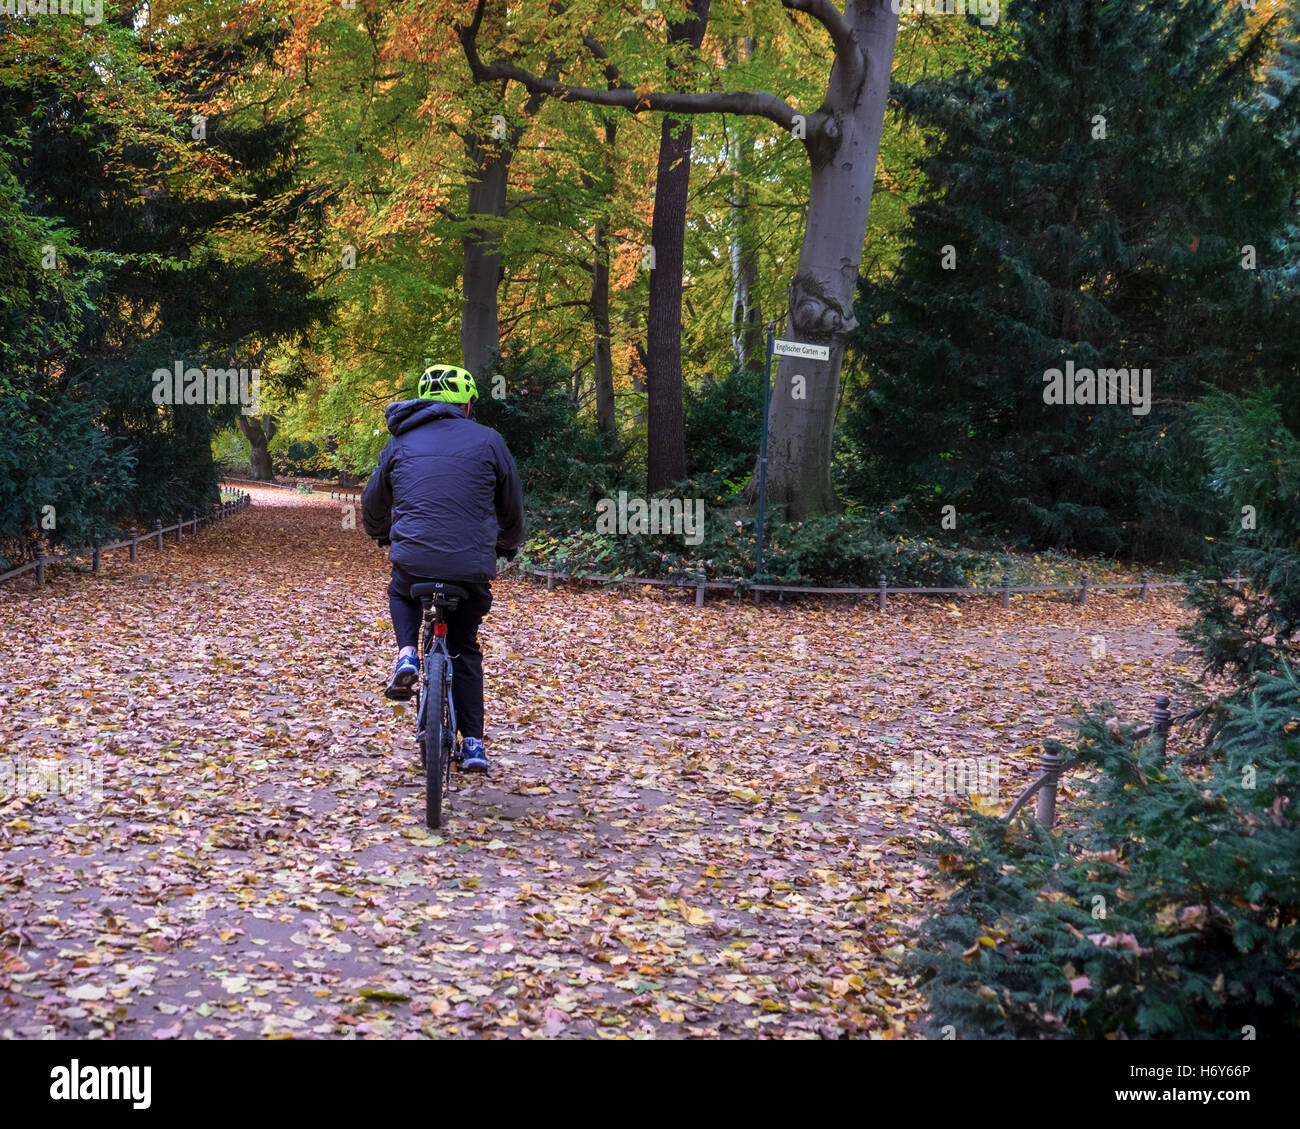 Berlino parco Tiergarten. Maschio Senior ciclista sulla bicicletta e foglie di autunno sul terreno e alberi autunnali Foto Stock